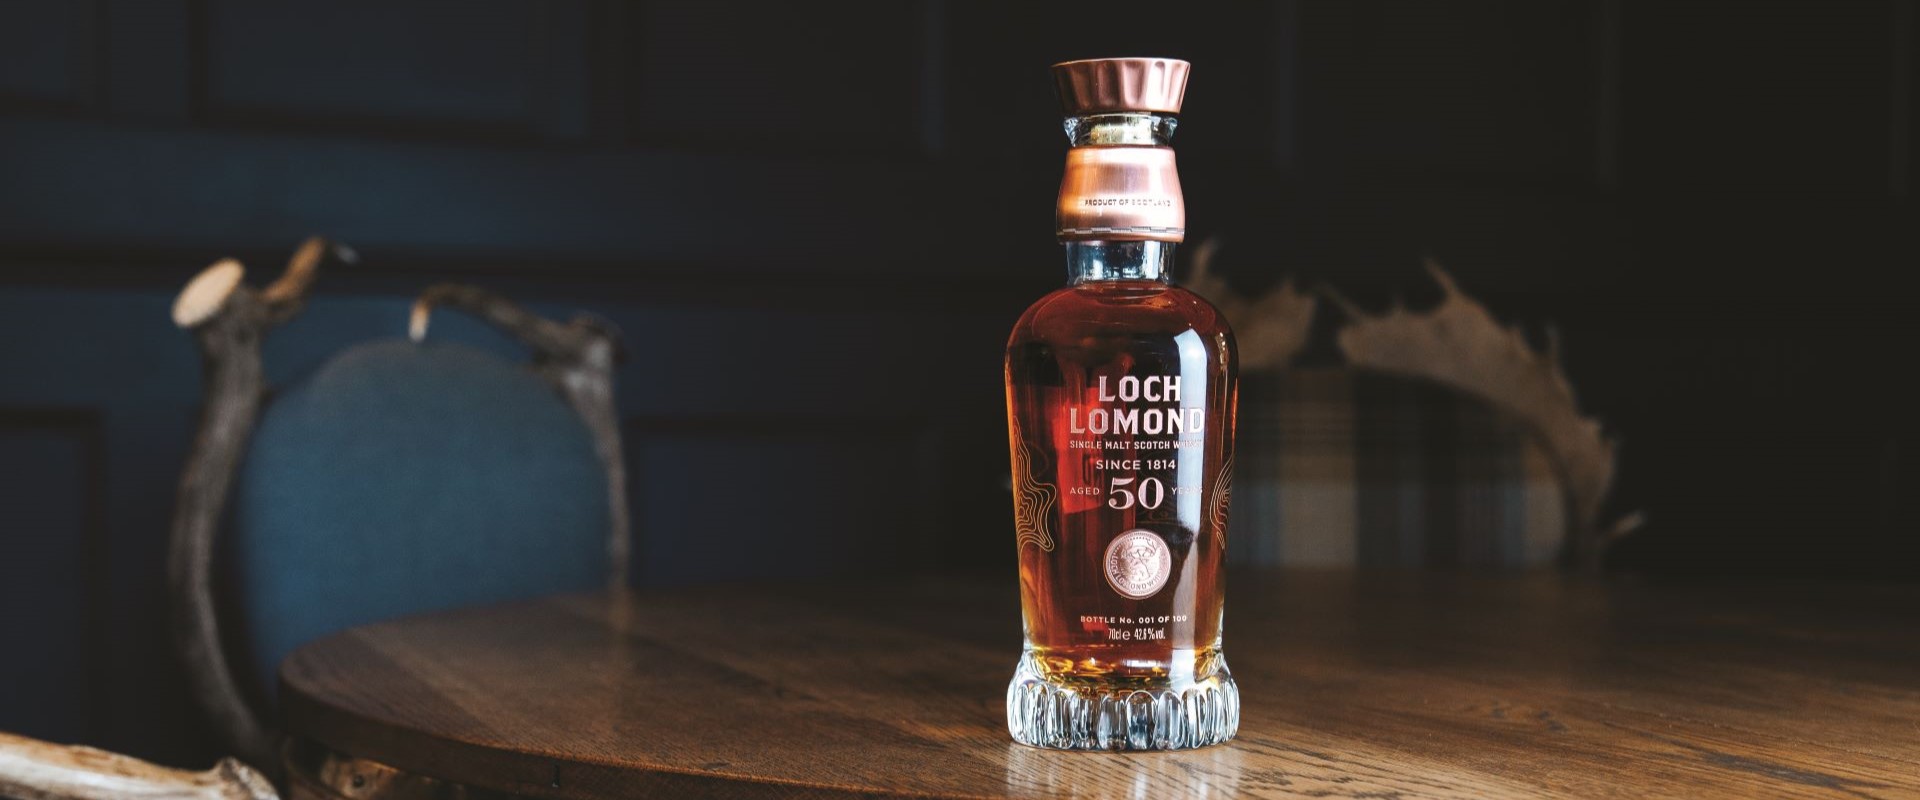 Loch Lomond distillery unveils its highest age statement whisky to date